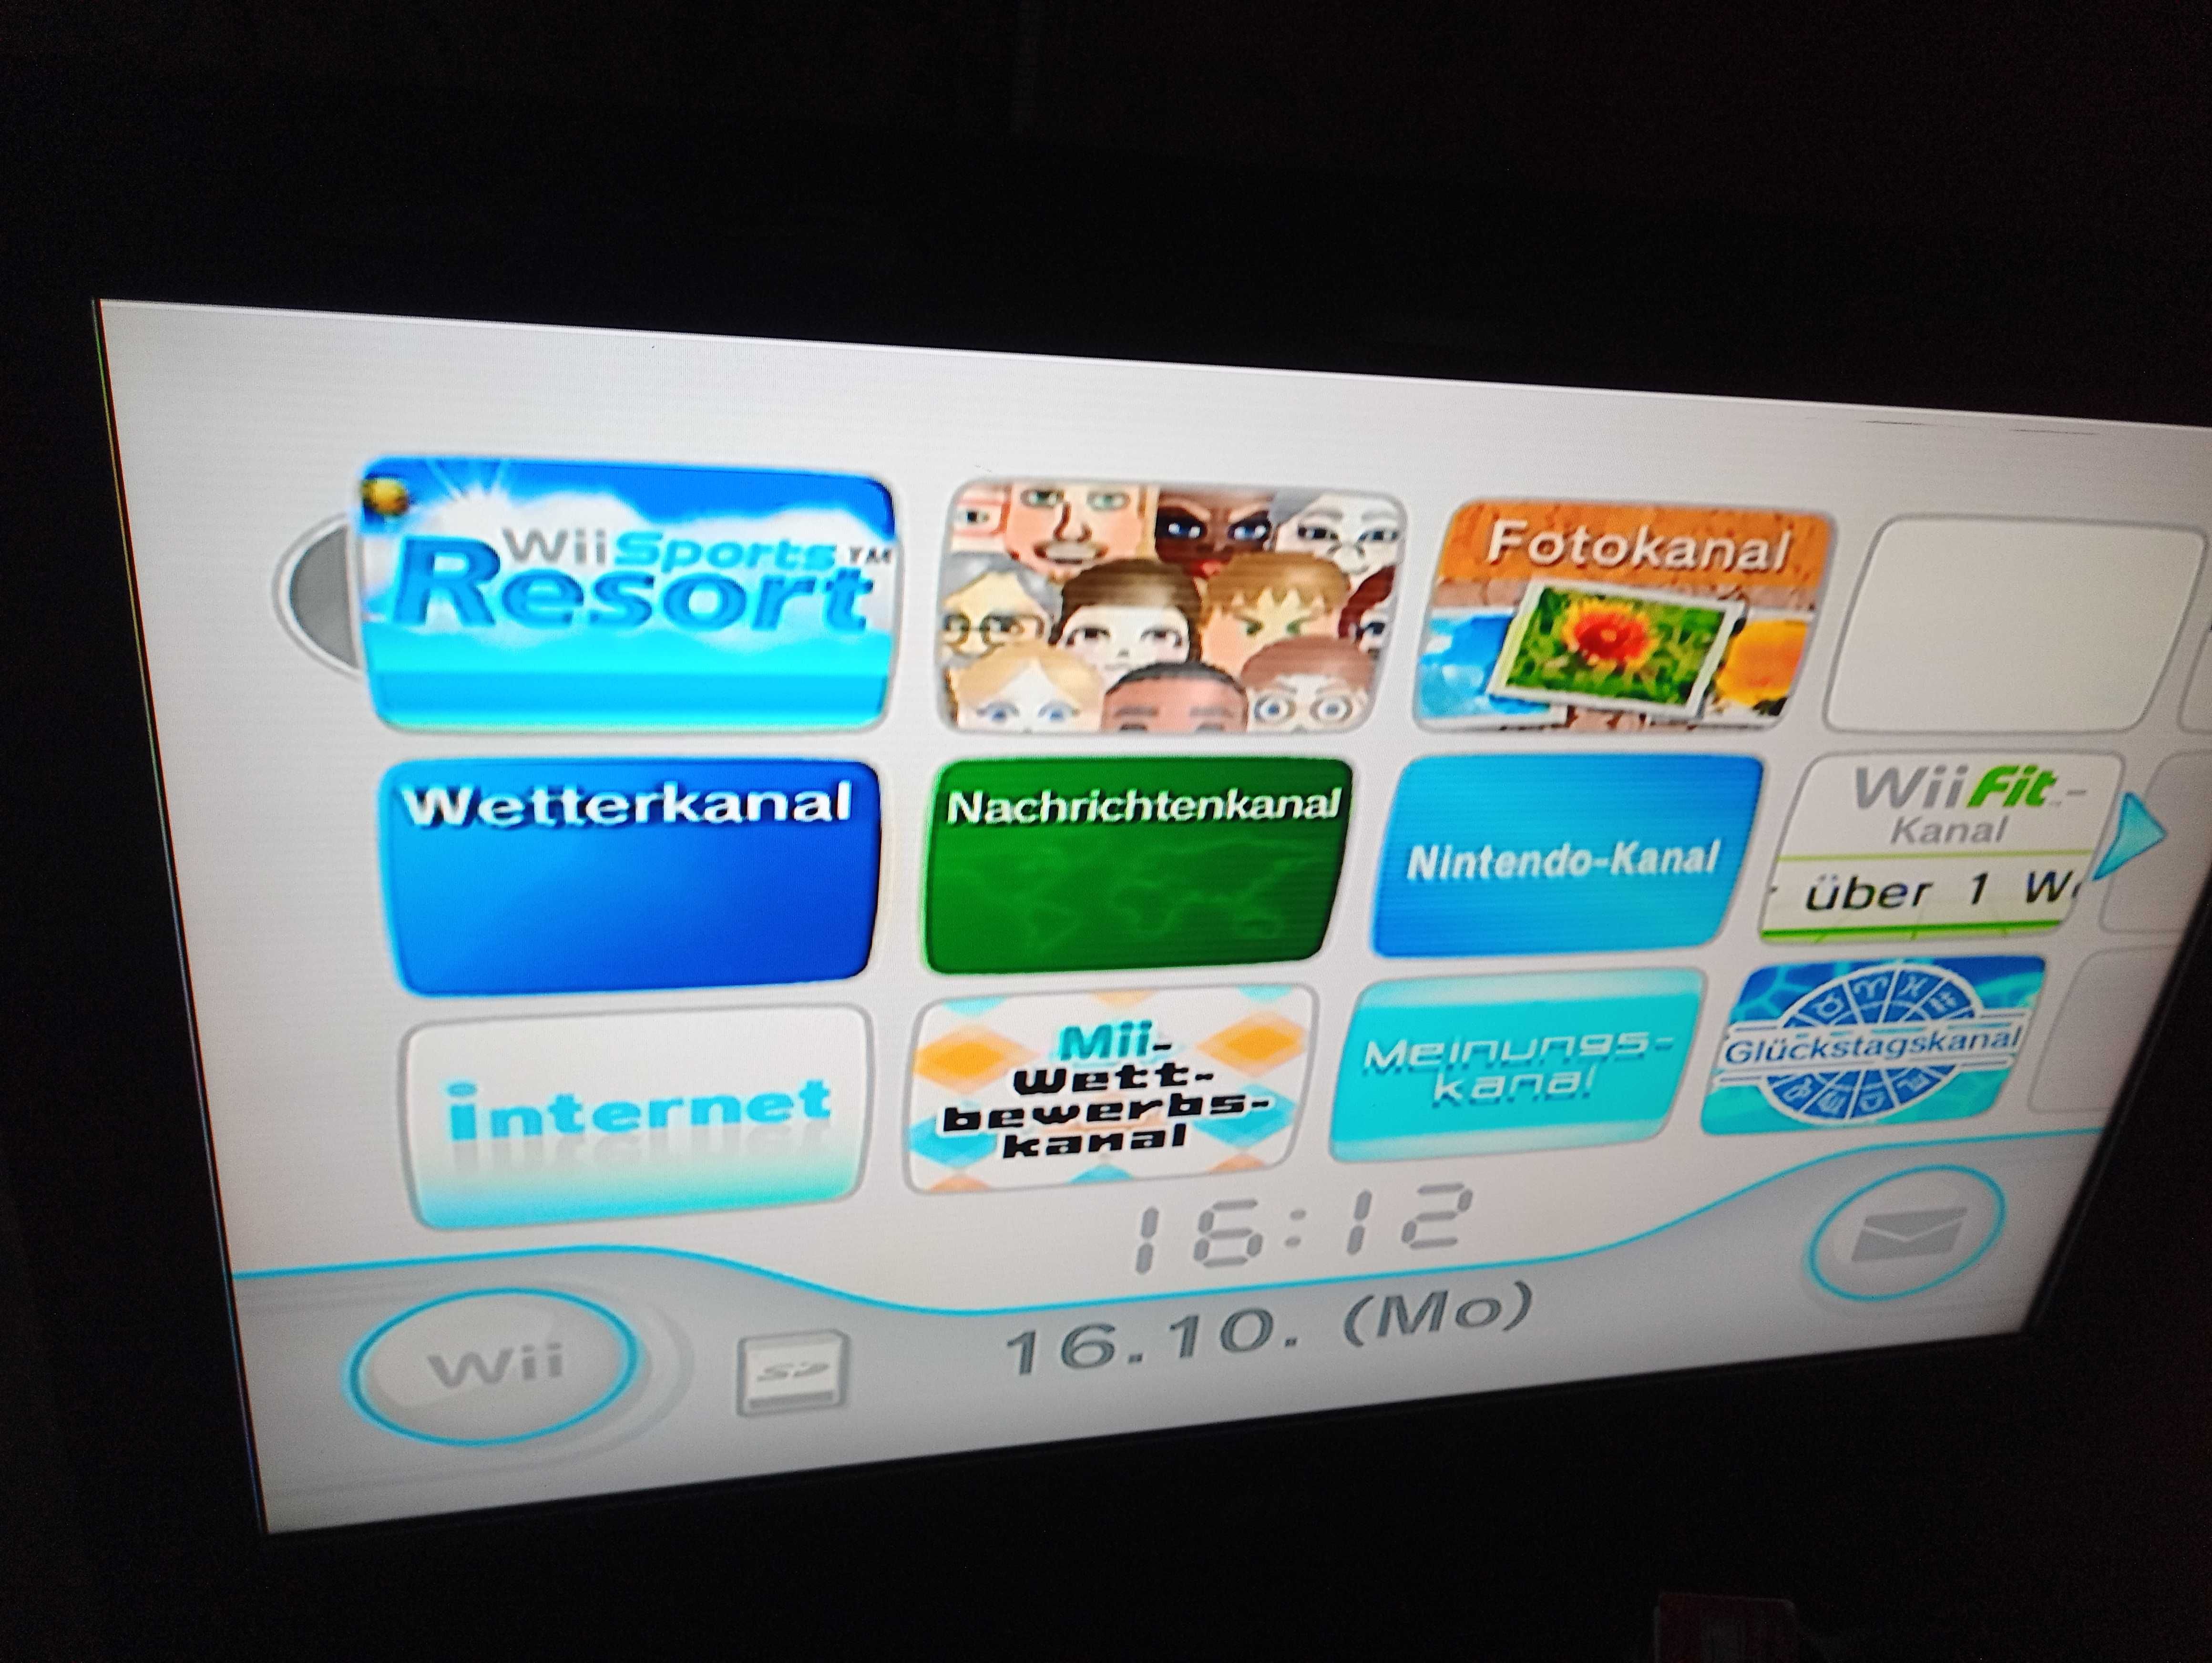 Wii sport resort cd jocuri wii testate cu zgarieturi